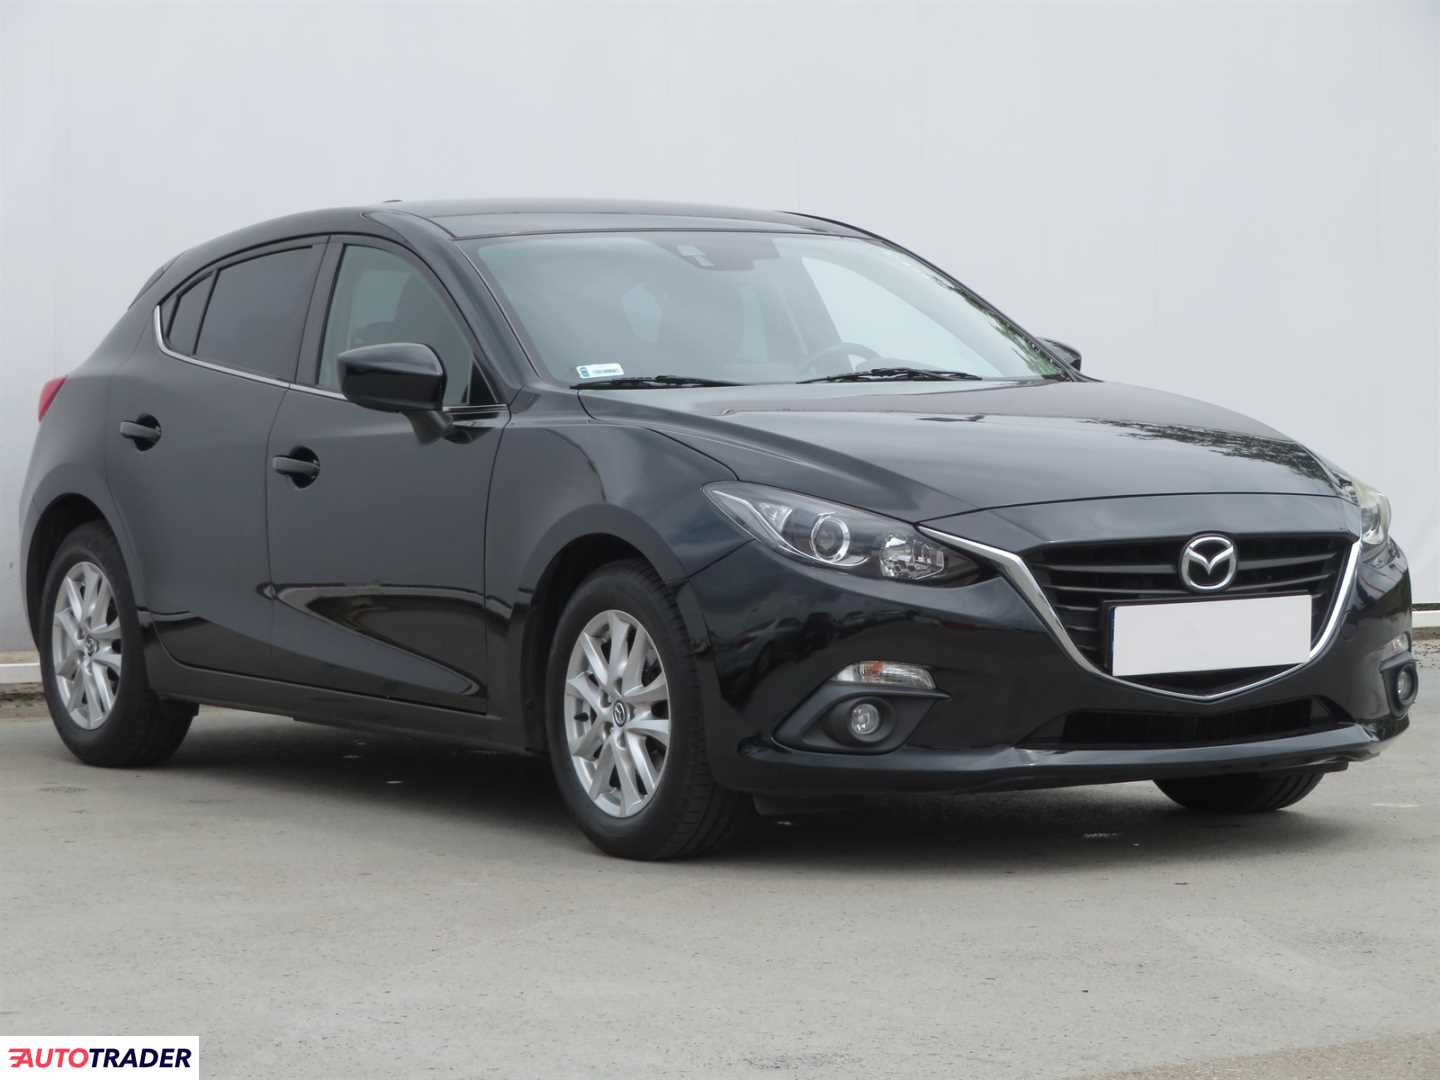 Mazda 3 2015 1.5 99 KM